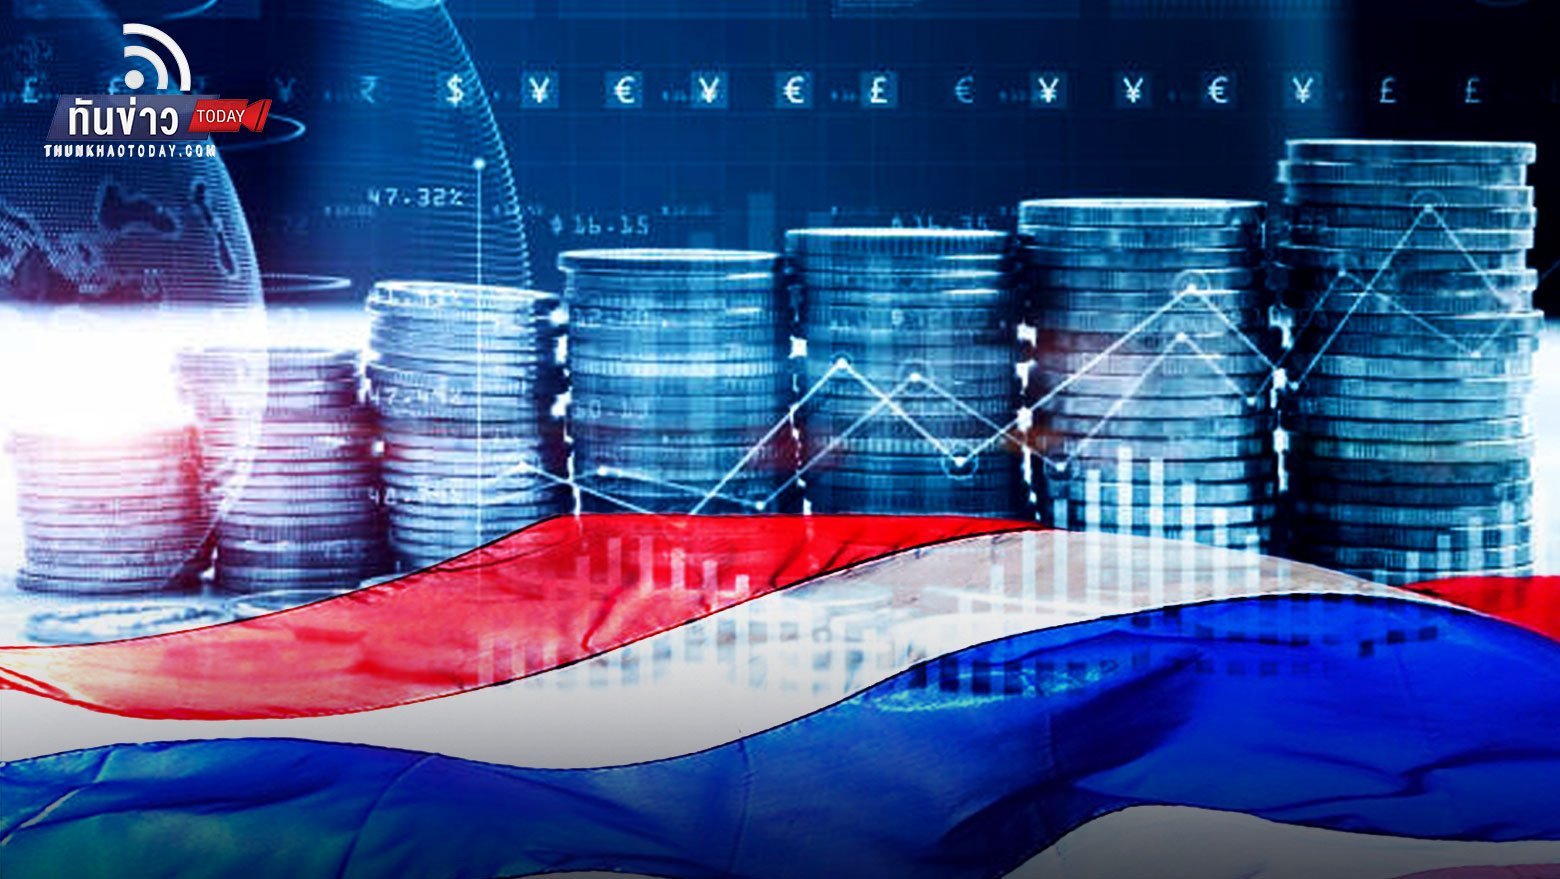 คาดเงินทุนไหลเข้าไทยชะลอตัว หลังเงินเฟ้อสูงกว่า 7%